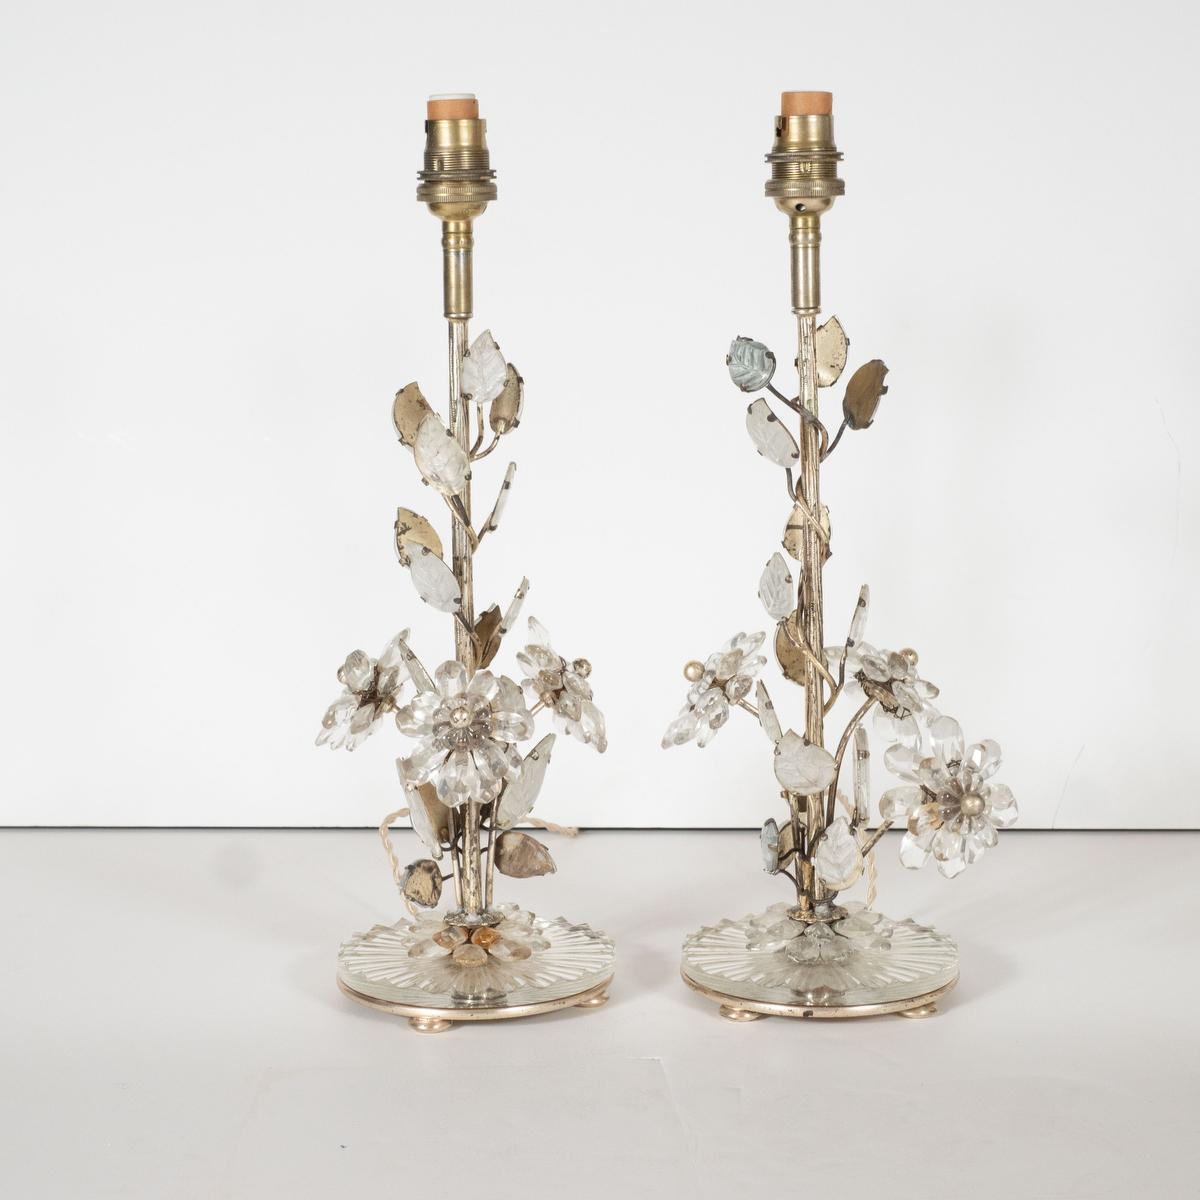 Zwei zierliche Tischlampen aus versilbertem Messing und Kristall mit Blumenmotiv und Details aus Blattsilber. Gezeichnet AM.